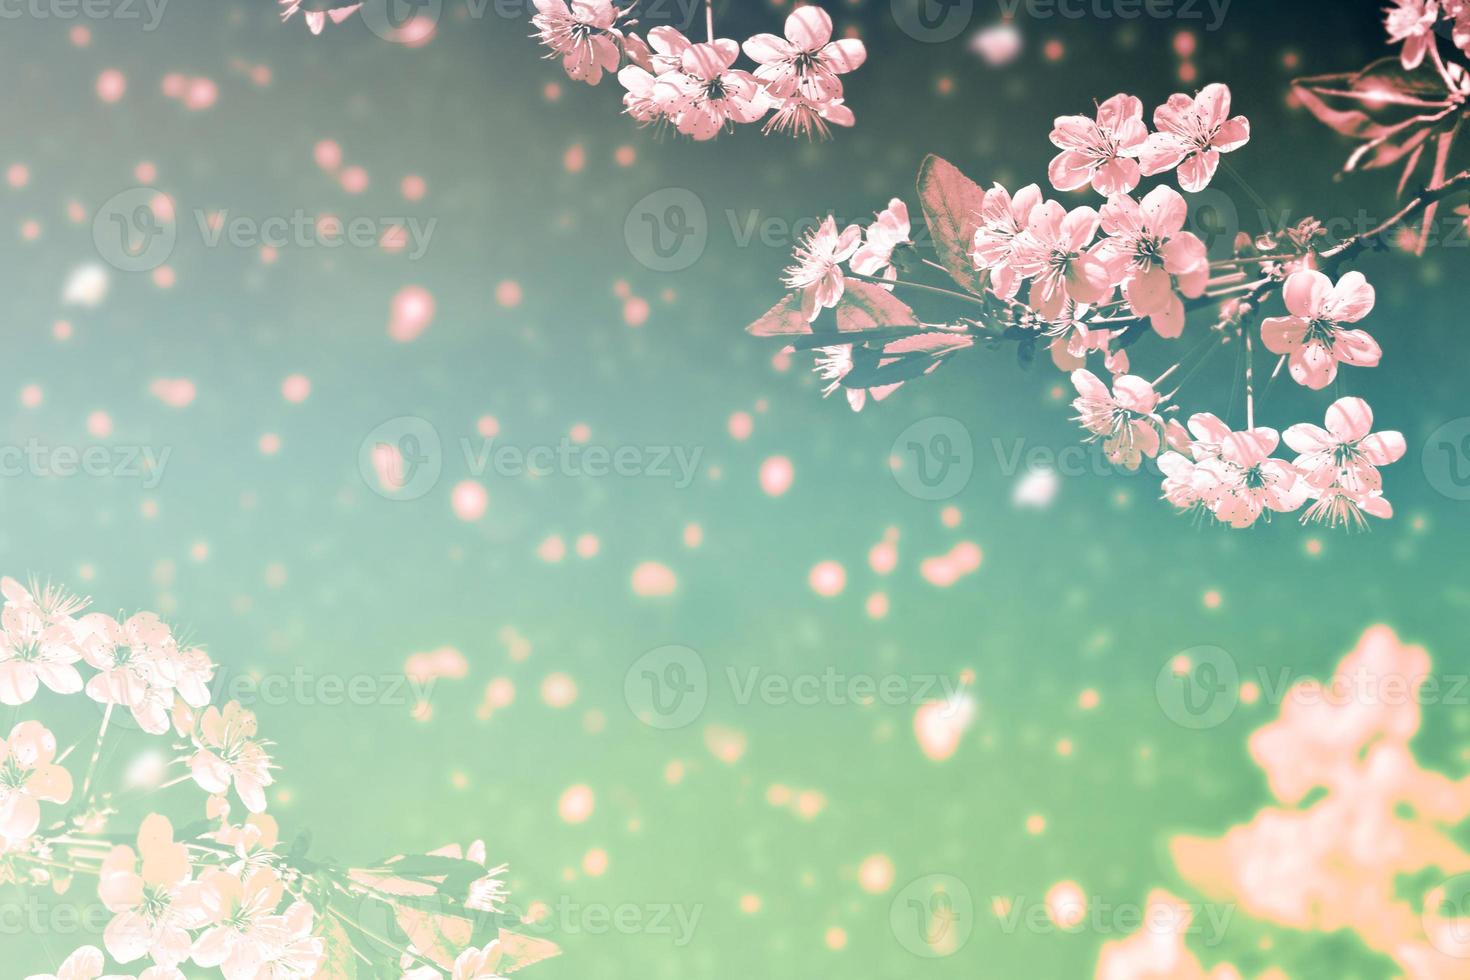 bloeiende takkers. heldere kleurrijke lentebloemen foto